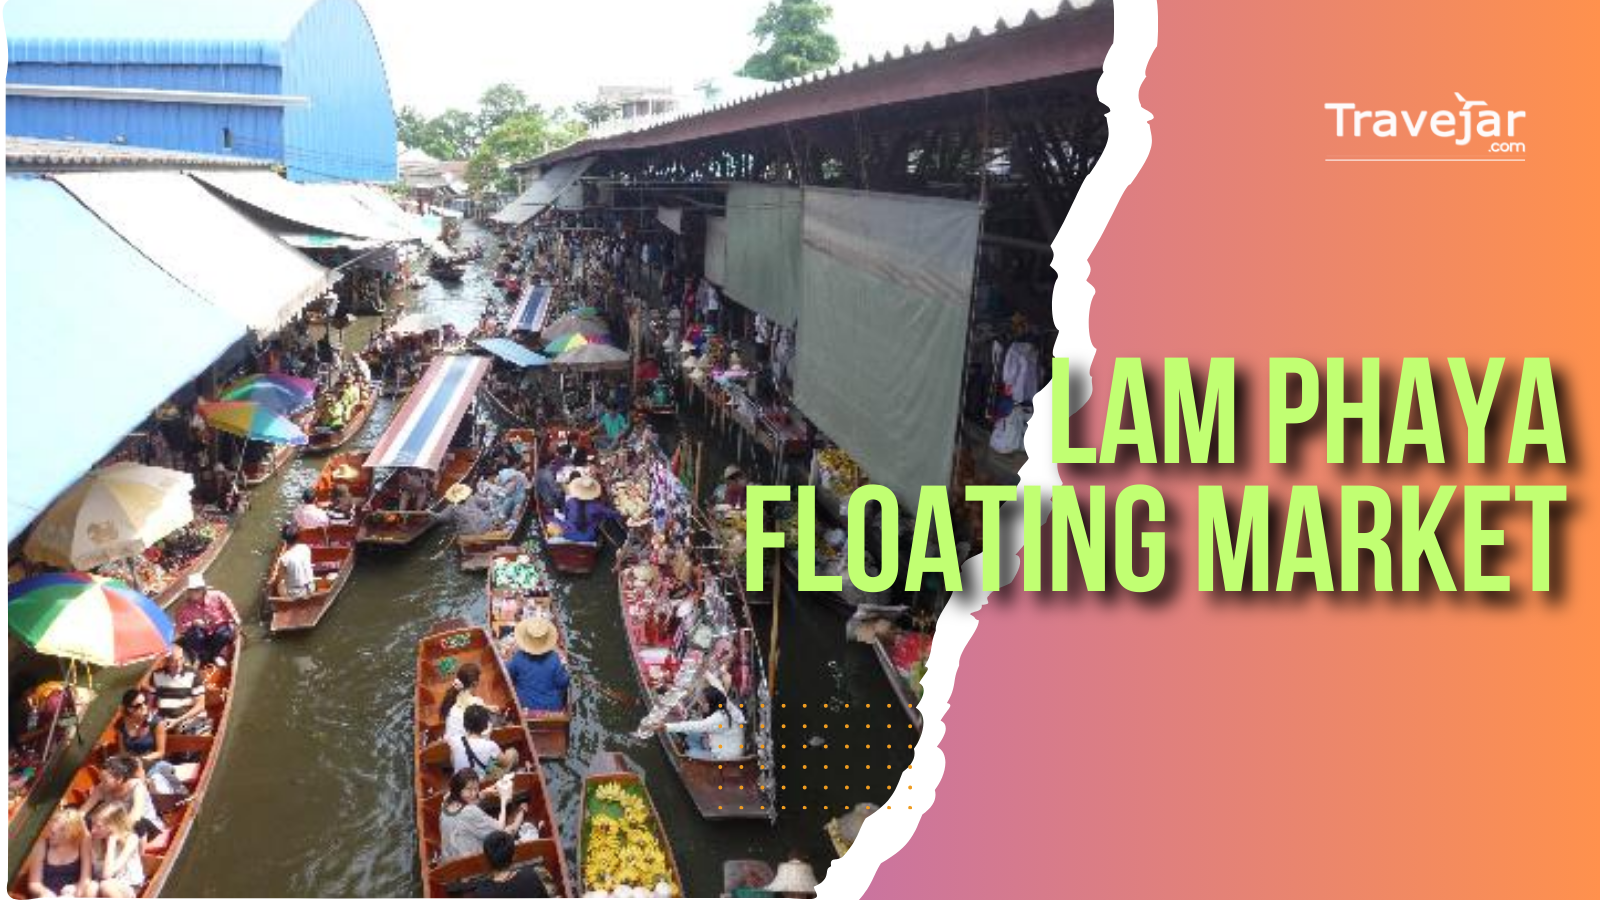 Lam Phaya Floating Market